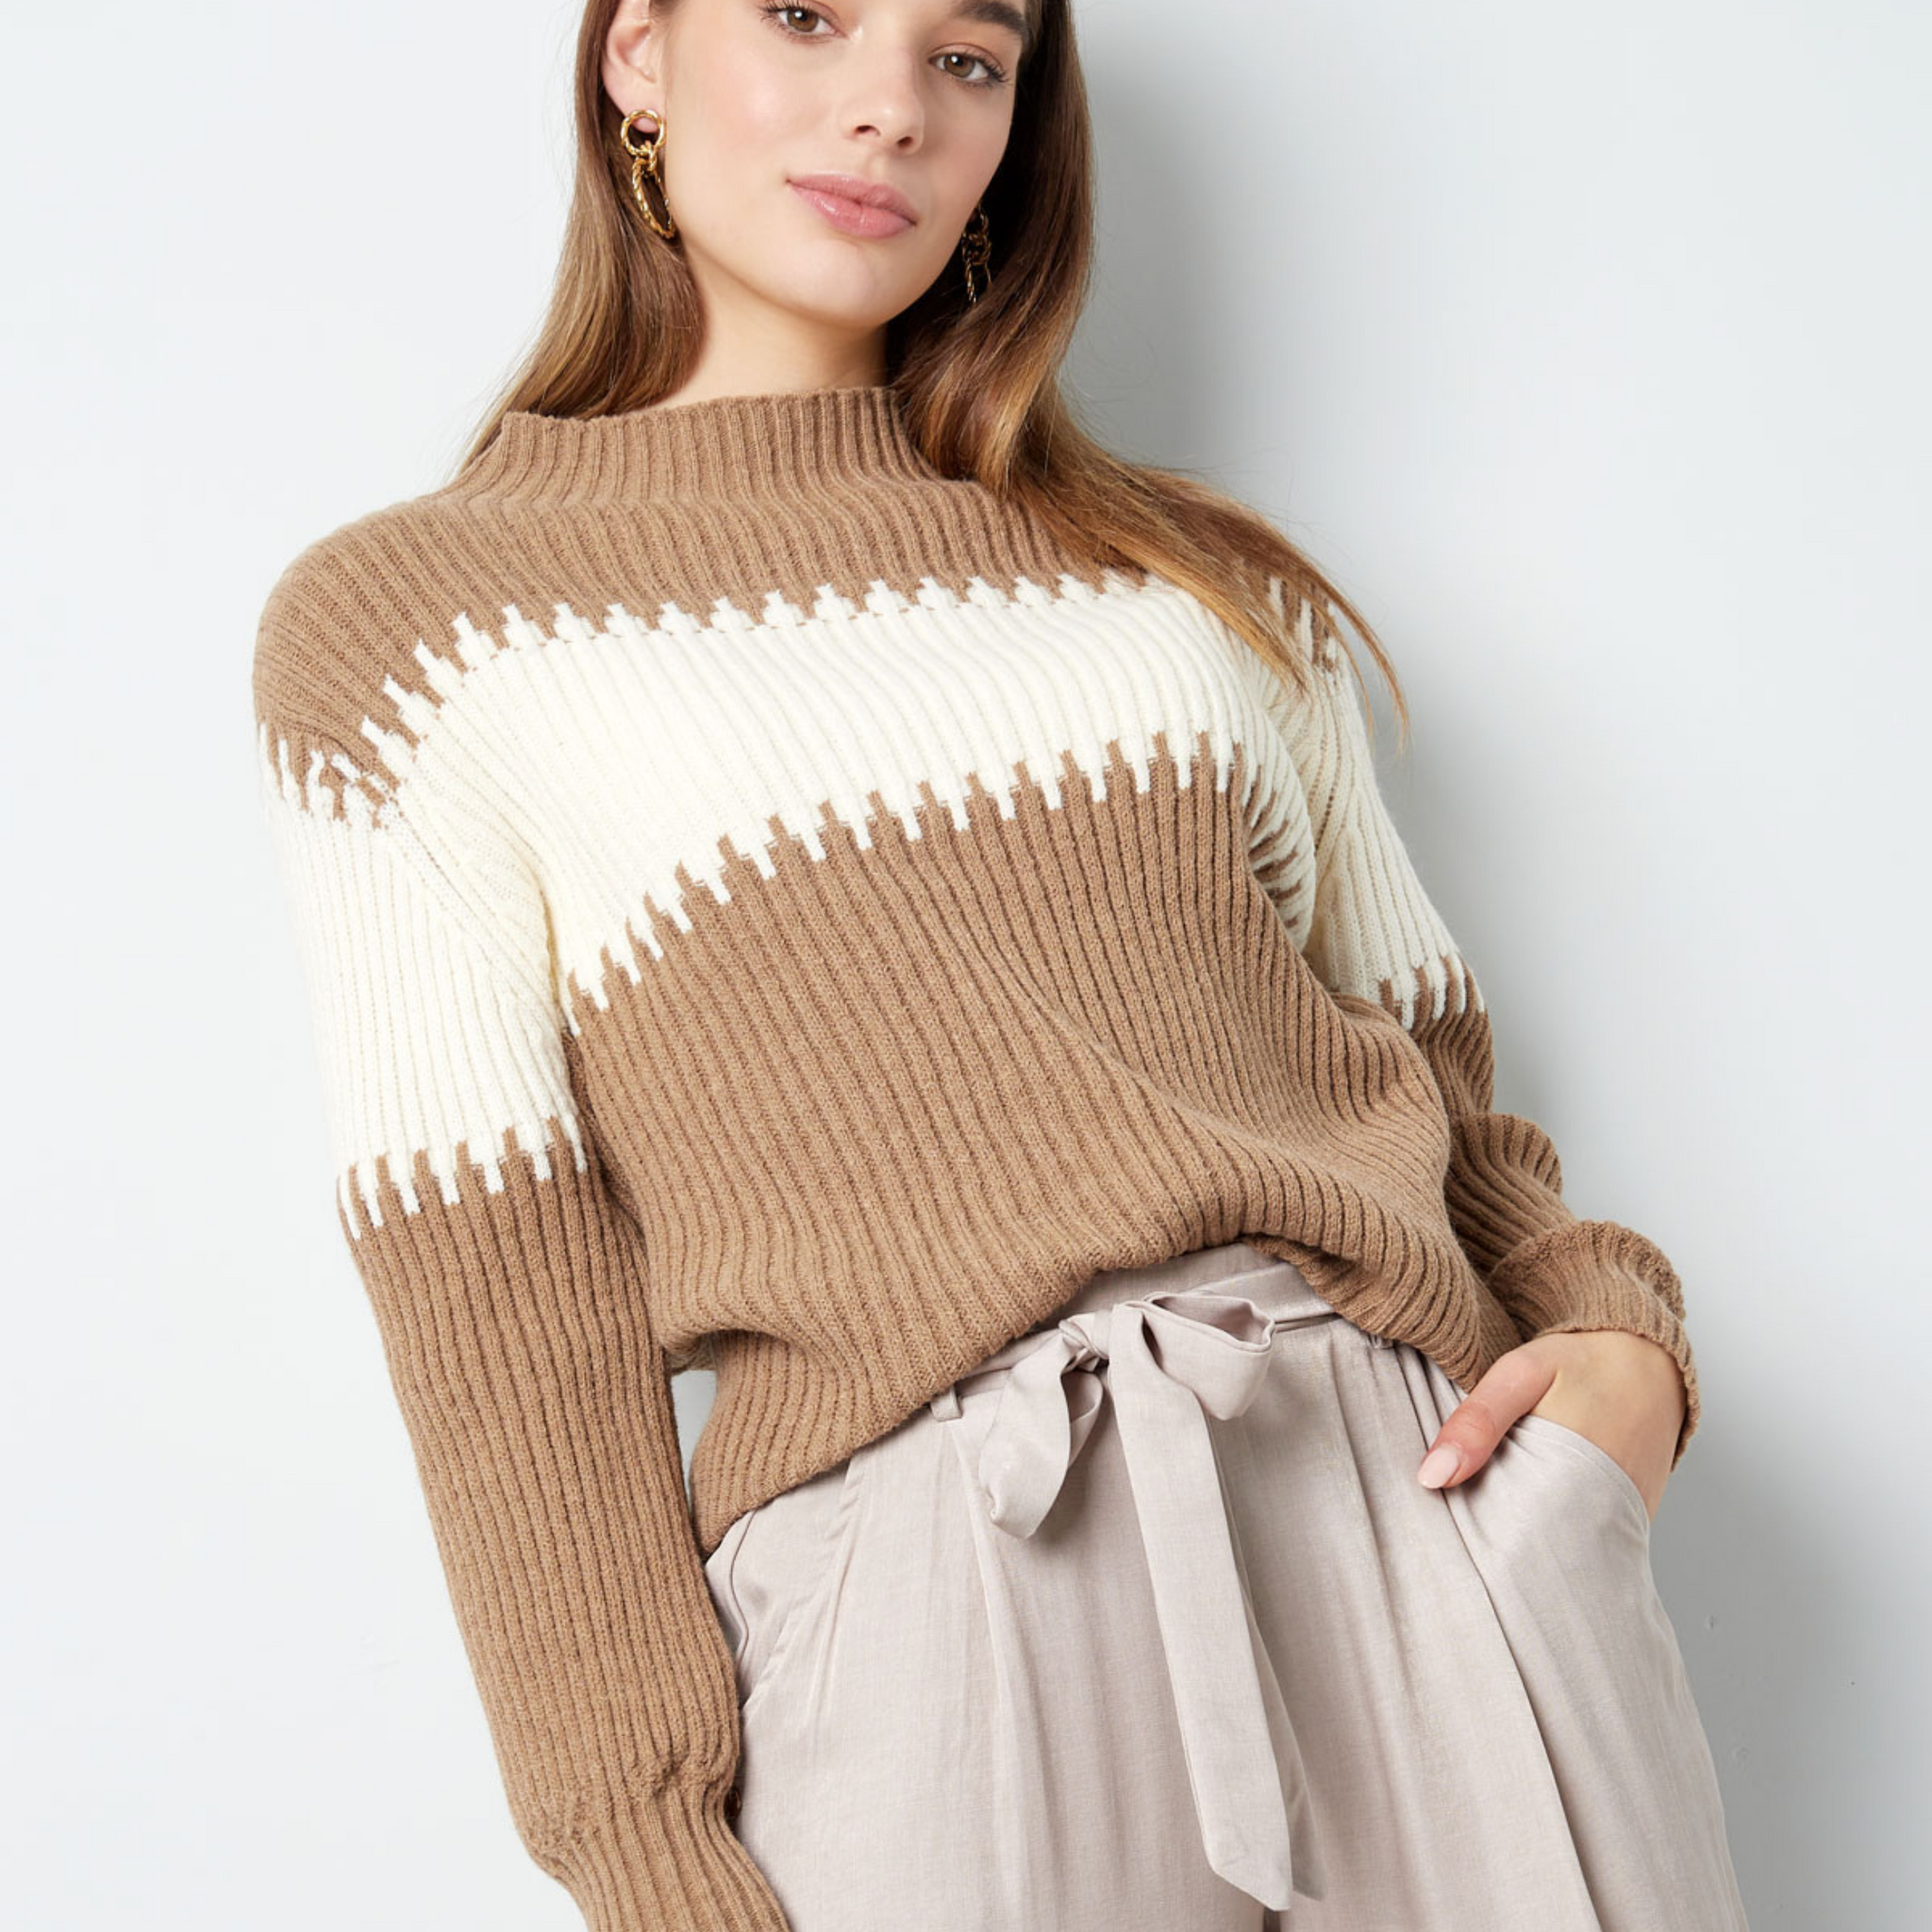 Er du på udkig efter den perfekte sweater til efterår og vinter? Så er den lige her.  Smuk striktrøje i 3 forskellige farver i det fineste udtryk.  Materiale: 45% akryl, 30% polyester, 25% nylon Pasform: Normal i størrelsen